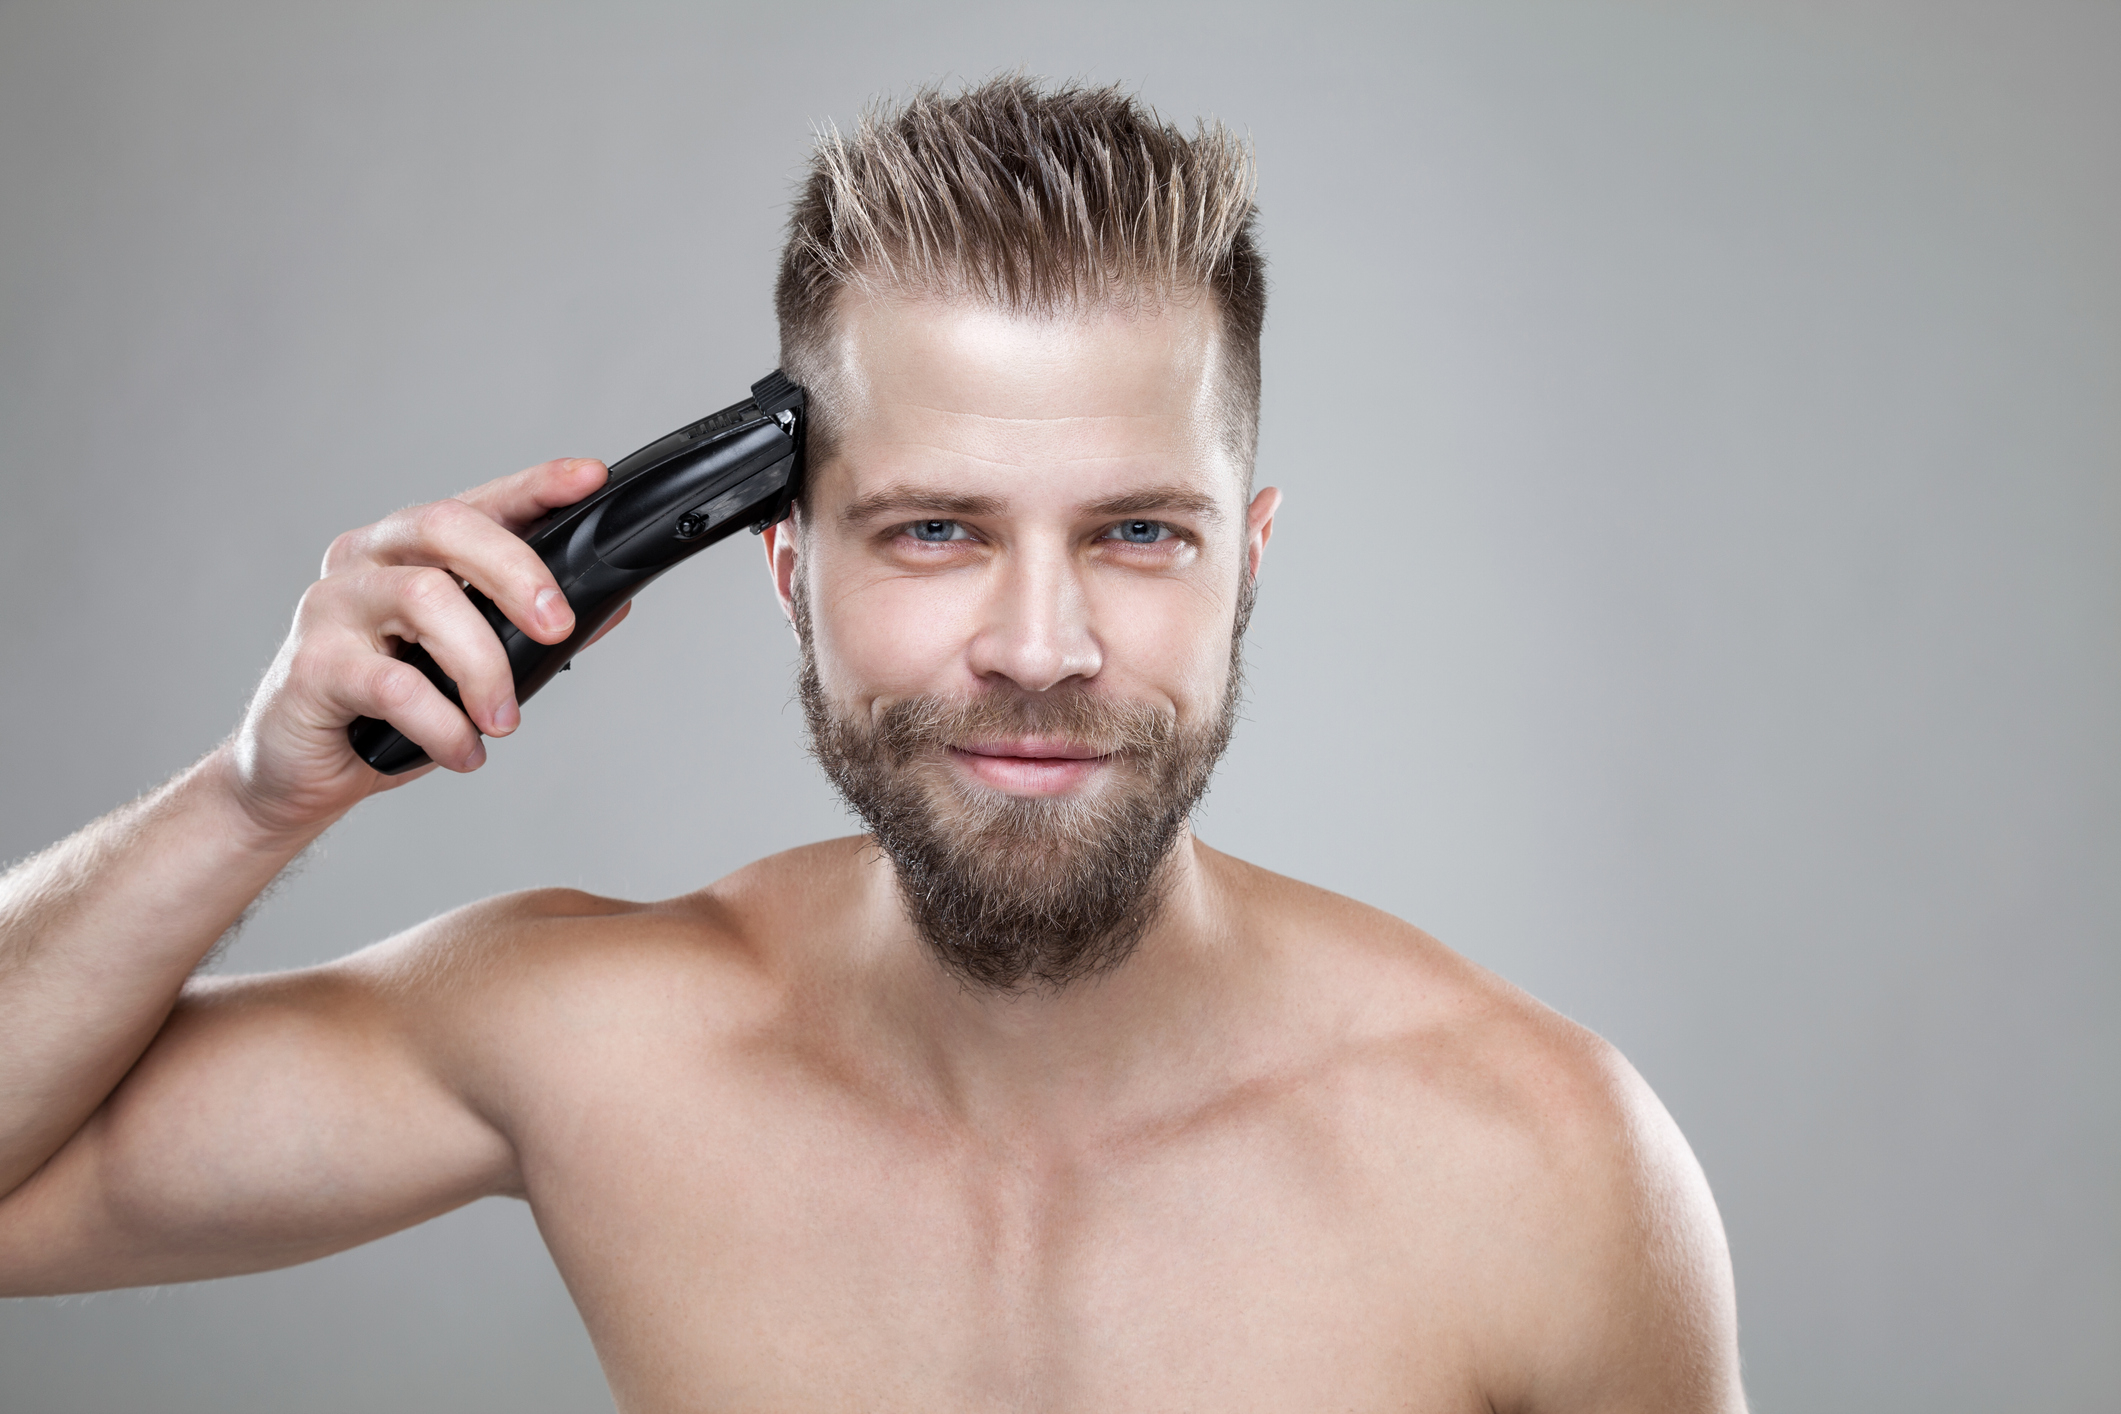 person shaving their head